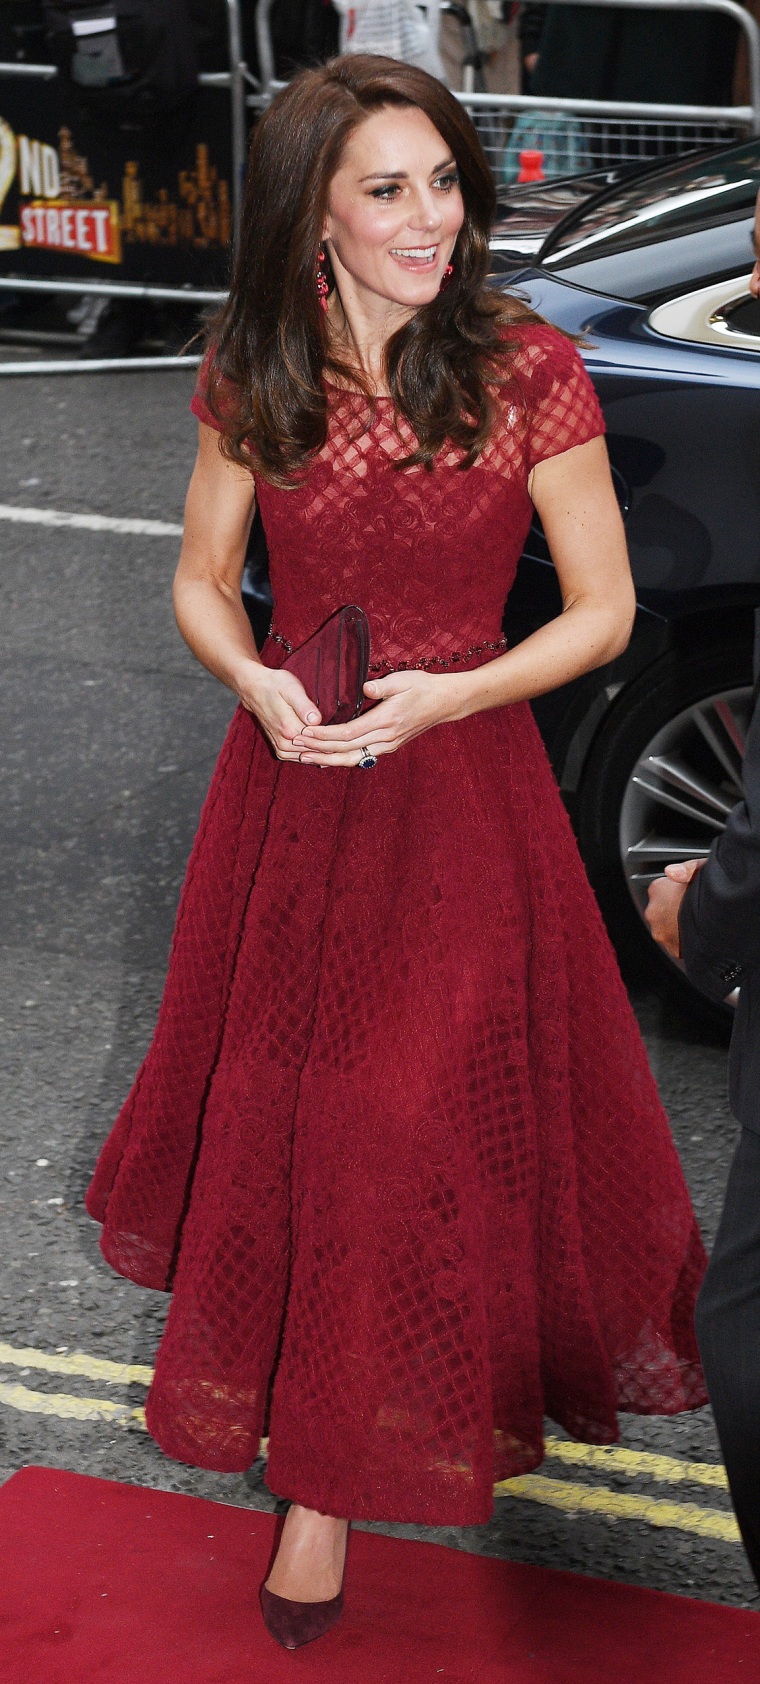 Former Kate Middleton, Duchess of Cambridge